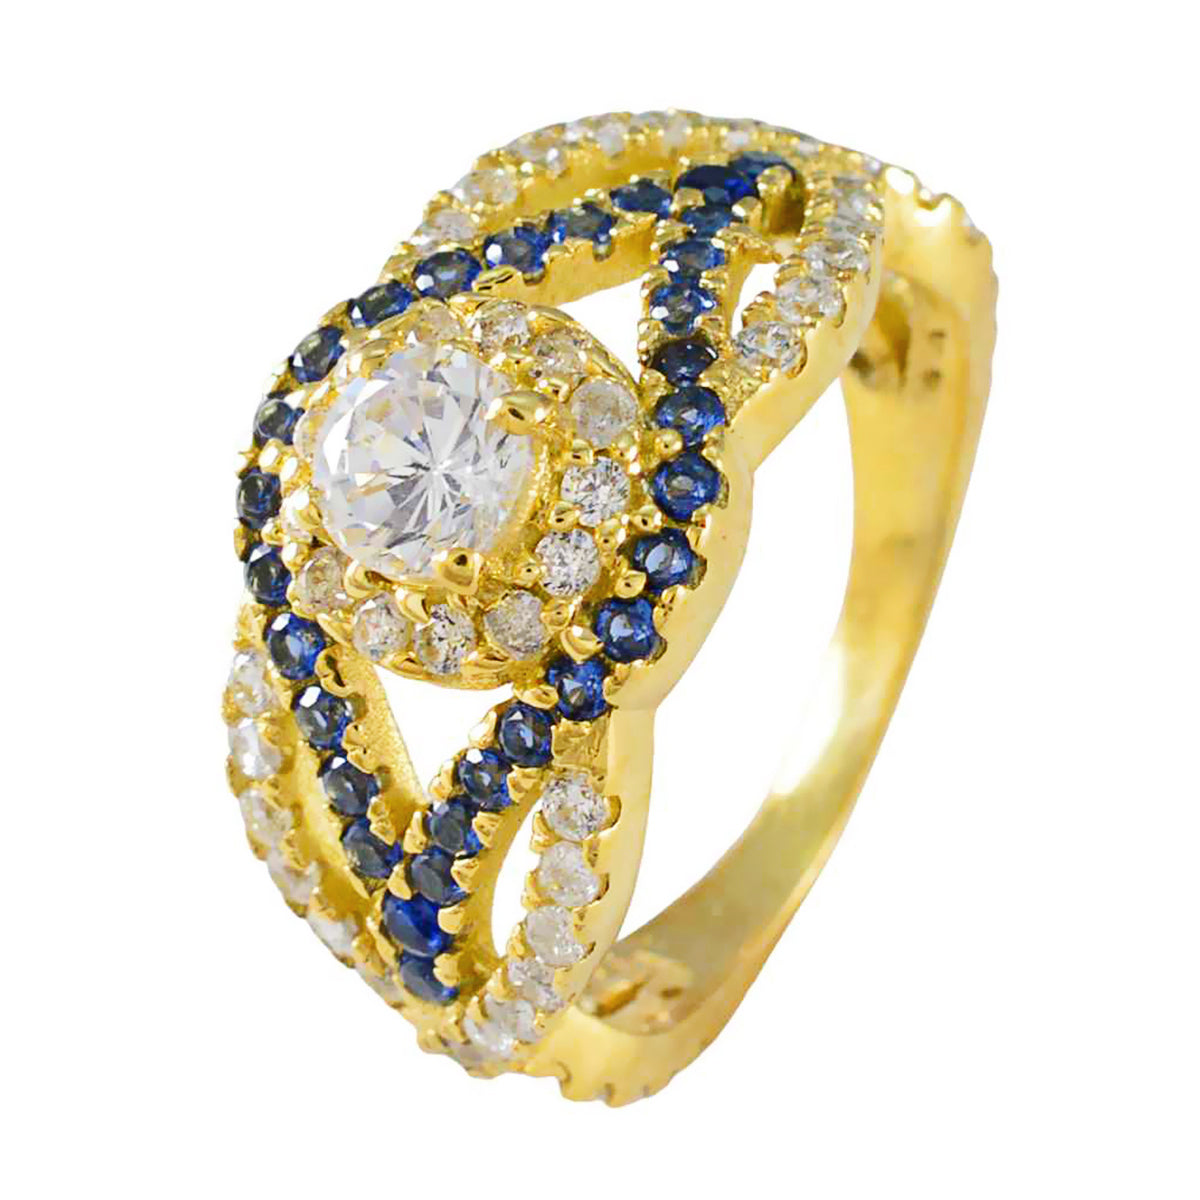 riyo smycken silverring med gul guldplätering blå safir cz sten rund form utstickande designsmycken nyårsring